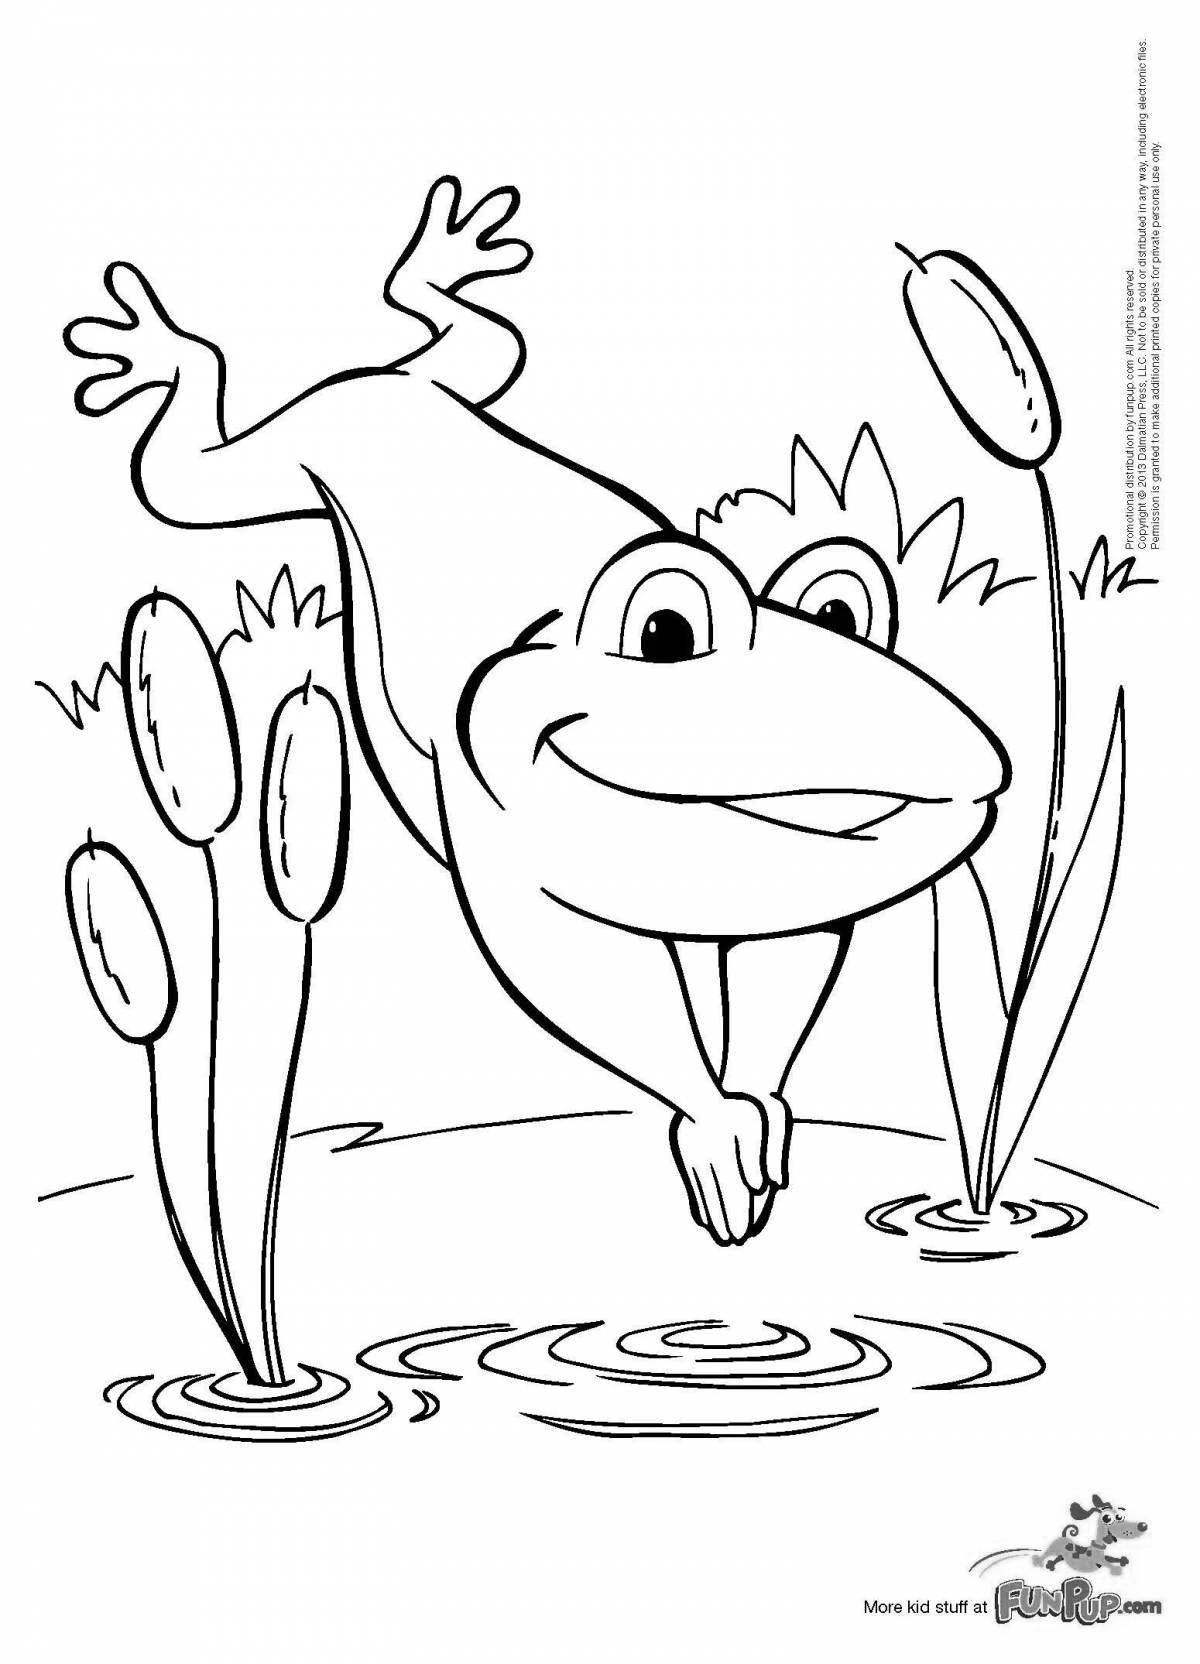 Coloring book brave traveler frog